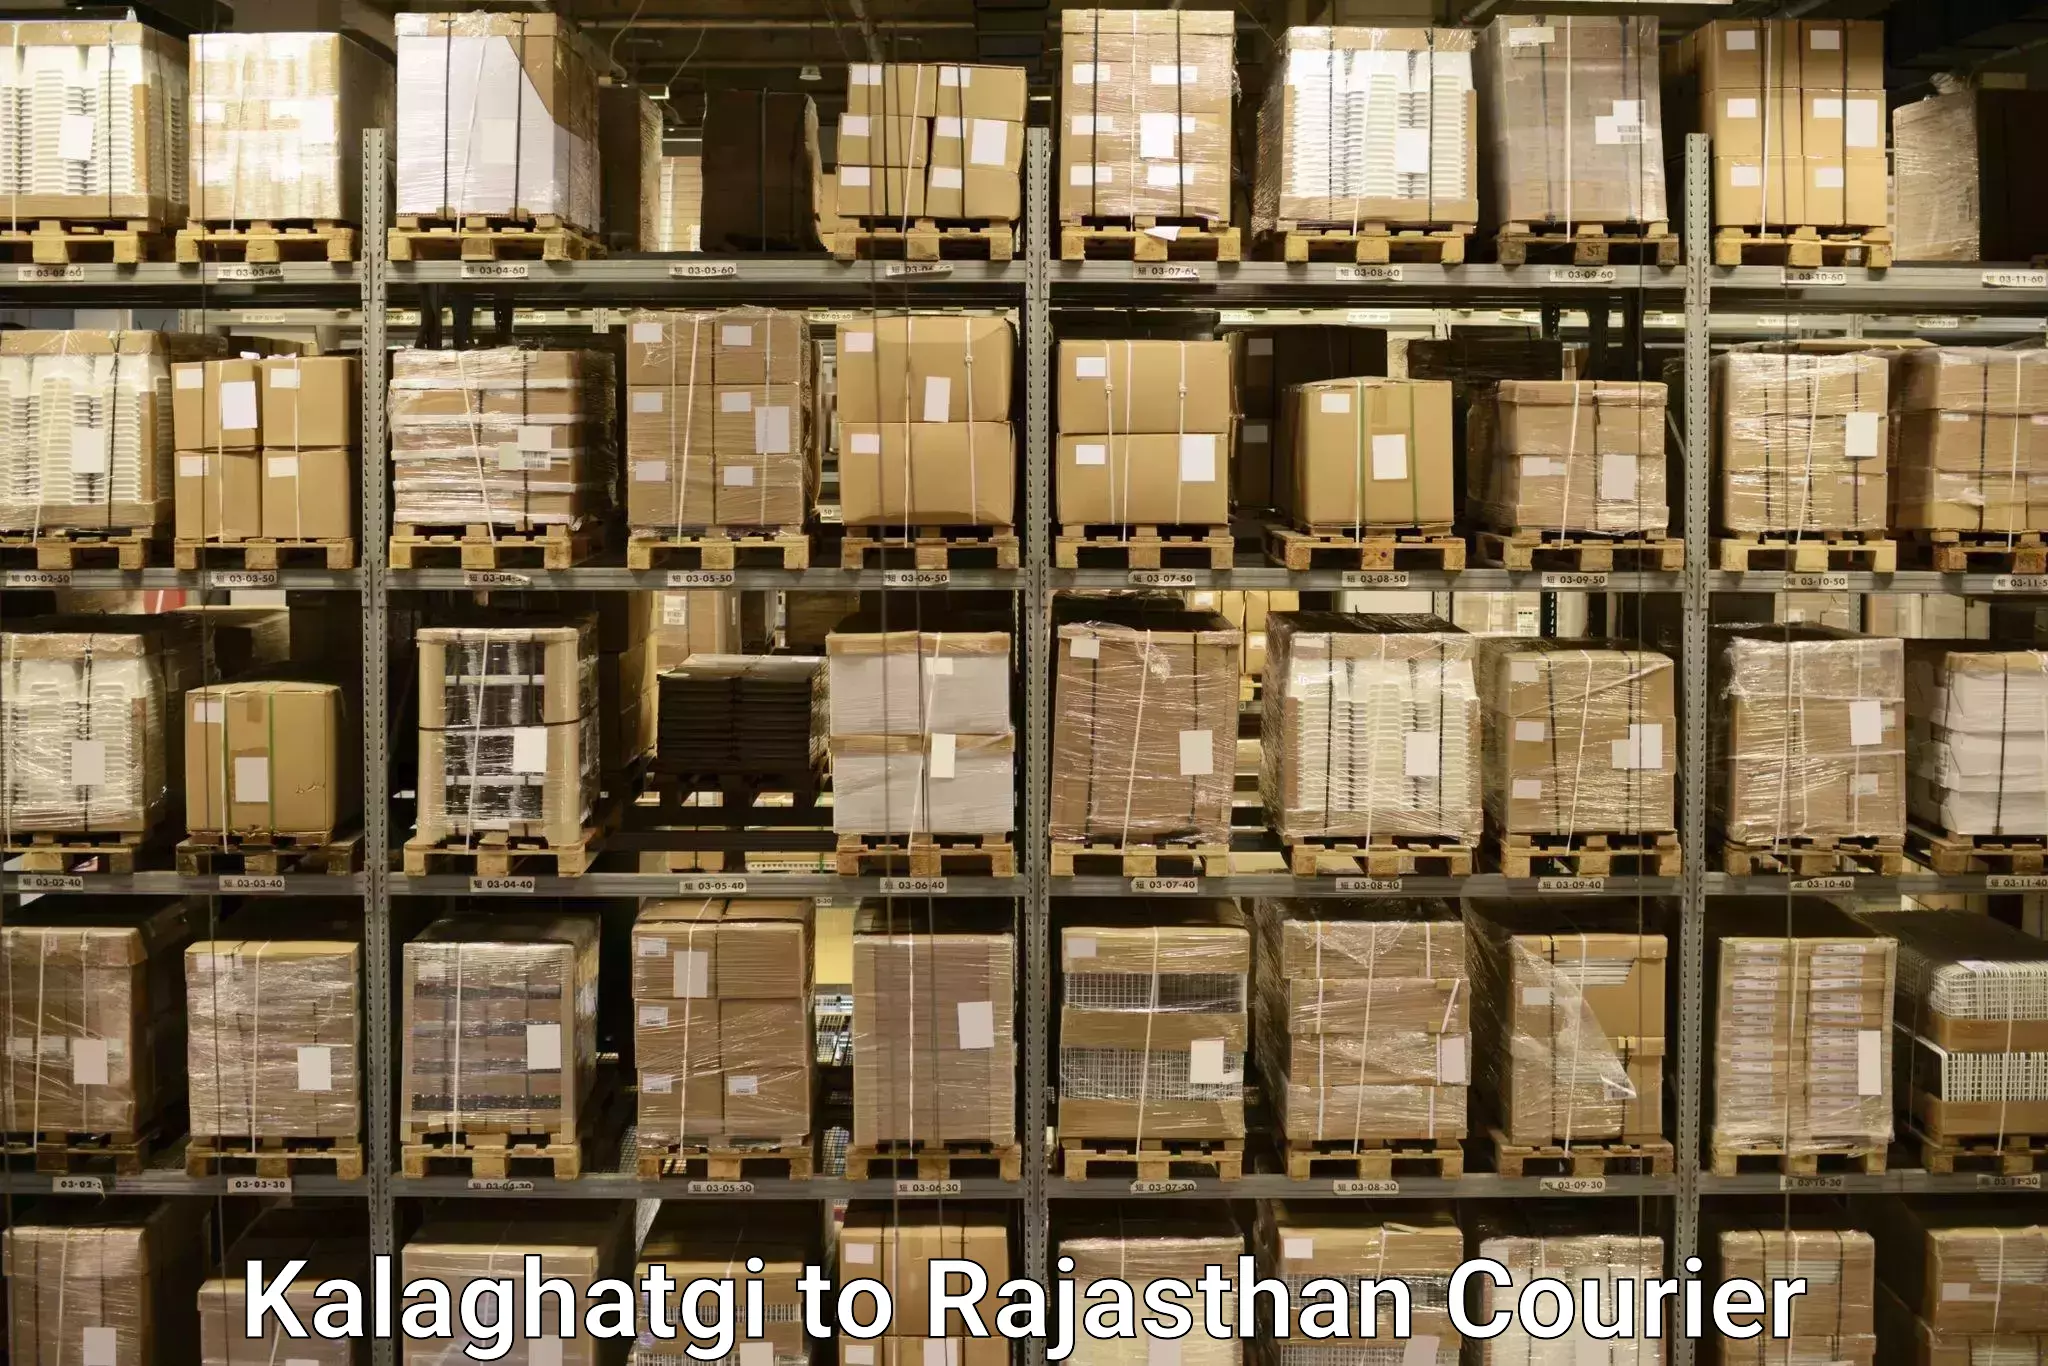 Excess baggage transport in Kalaghatgi to Kuchaman